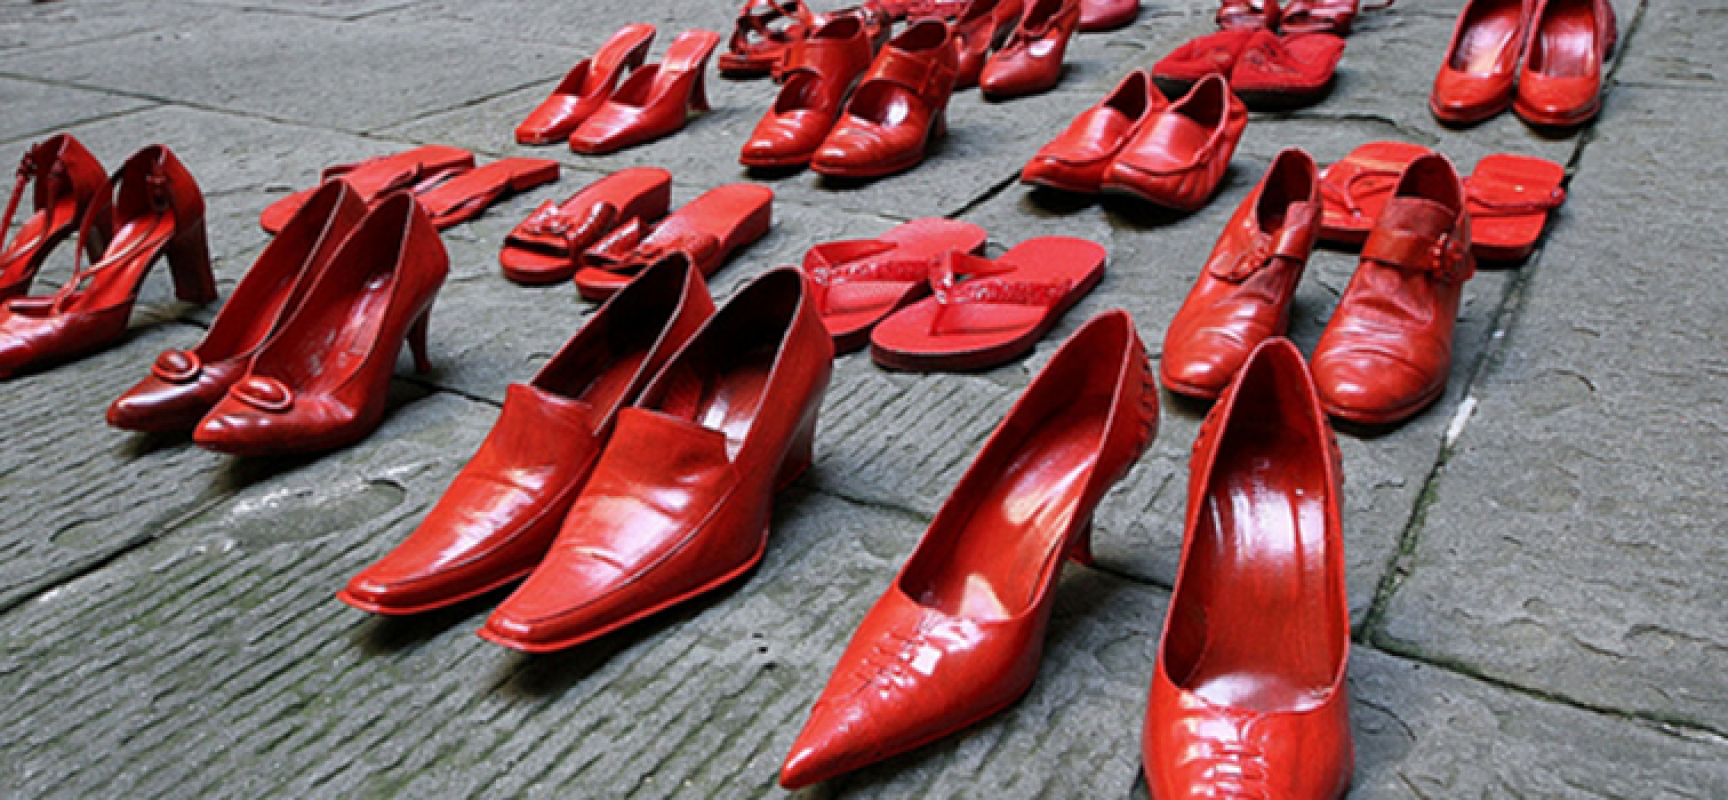 Le scarpe rosse di Sarah celebrano la giornata mondiale contro il femminicidio